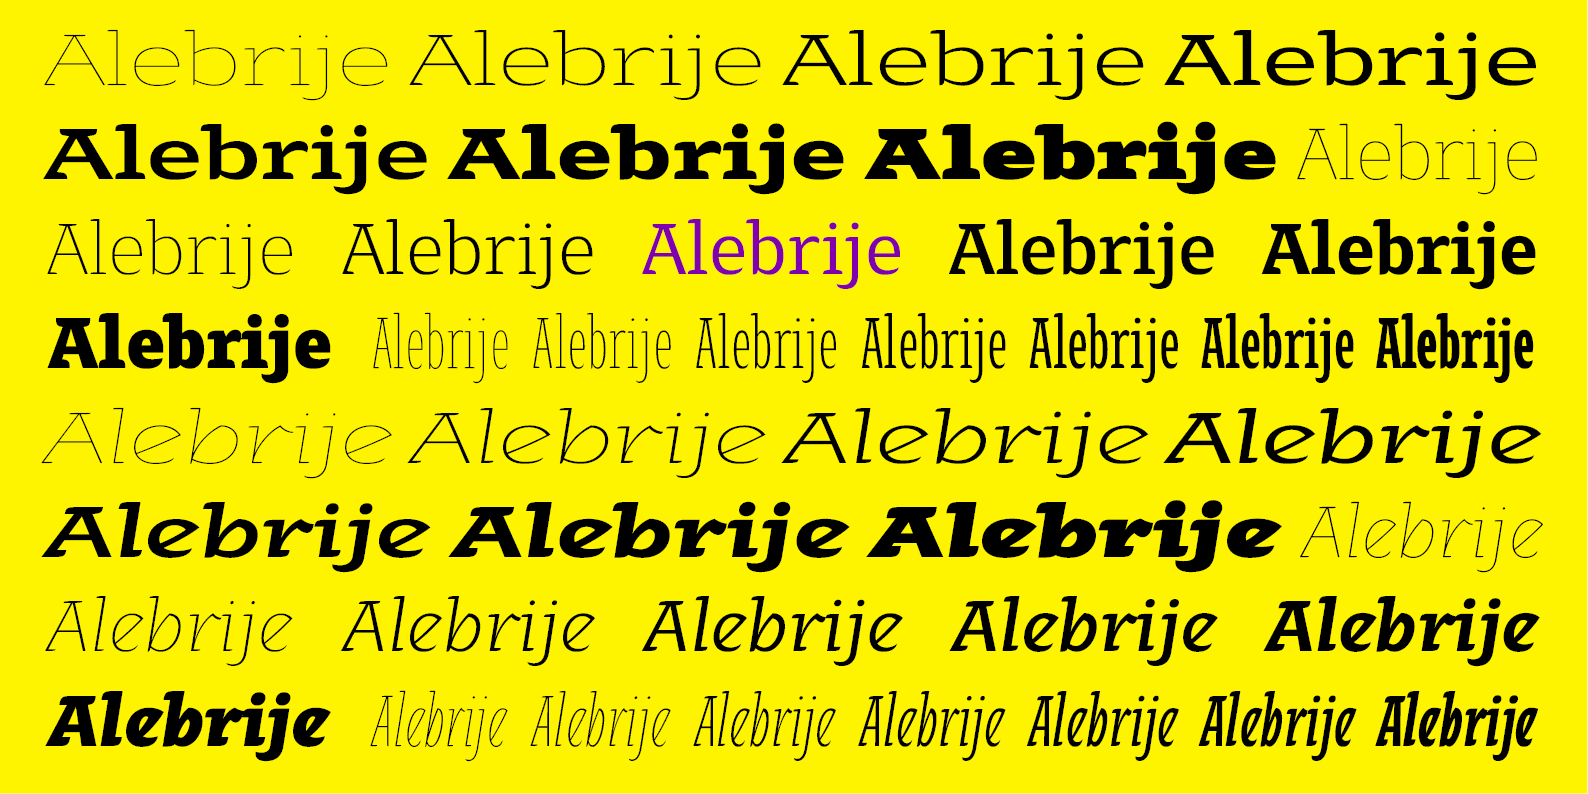 Alebrije